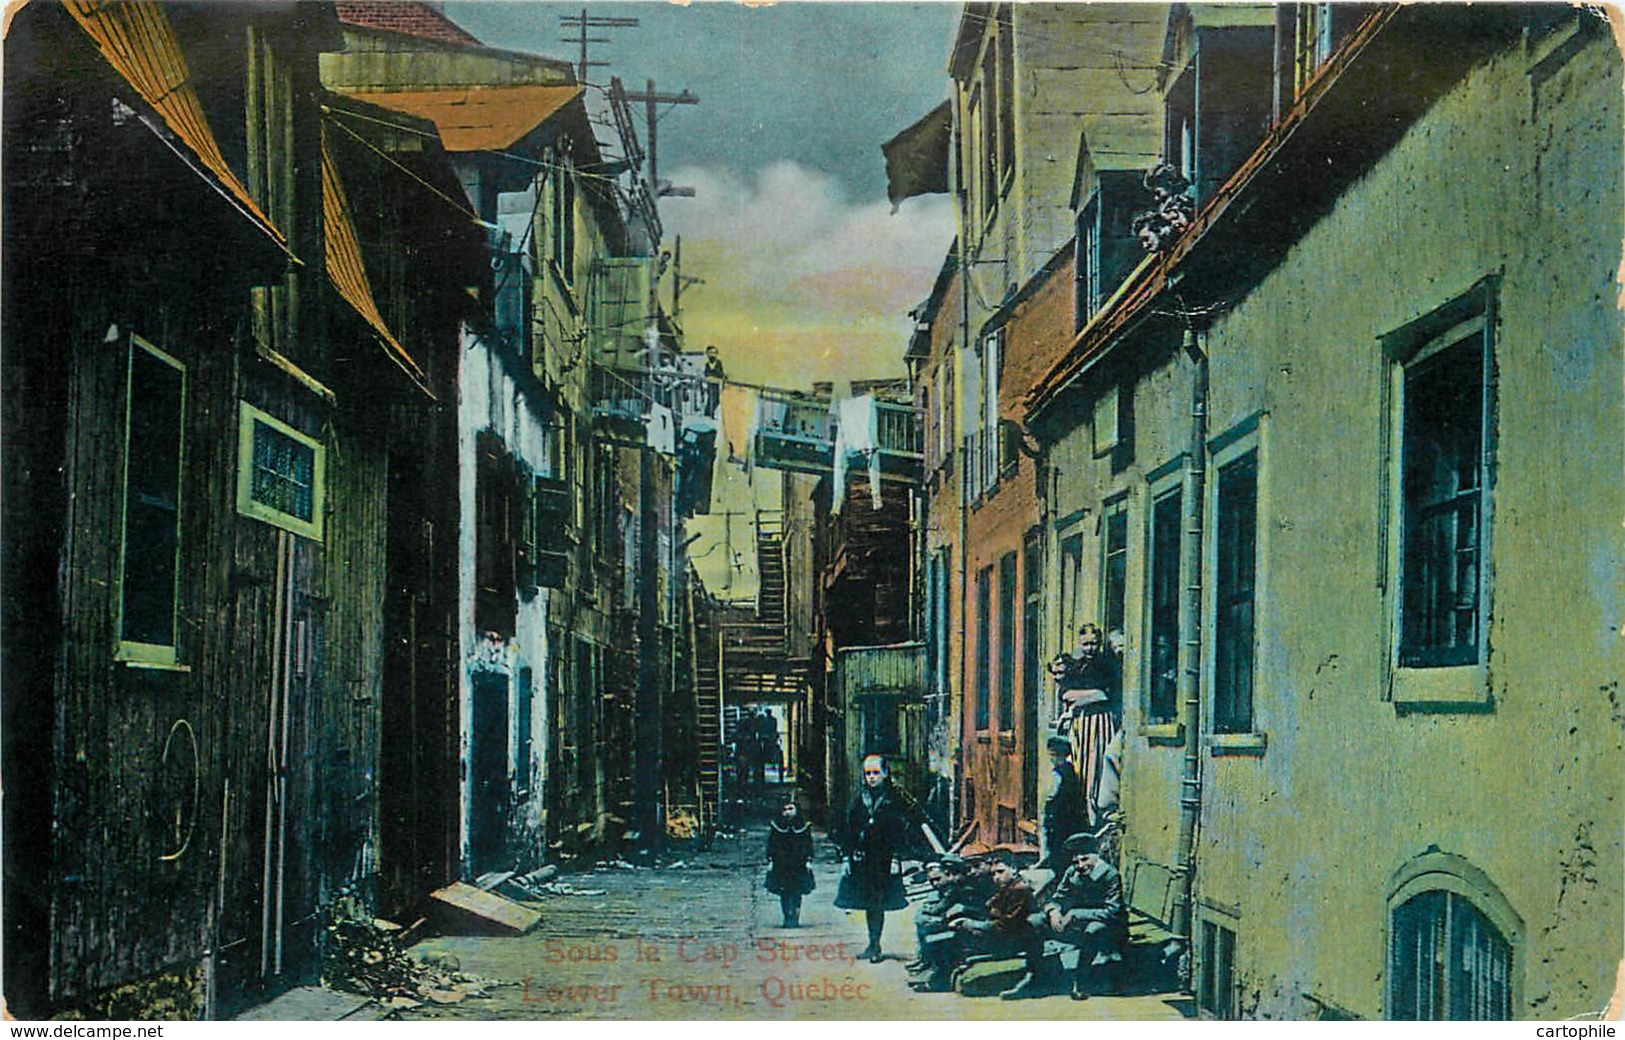 Canada - Quebec - Sous Le Cap Street - Lower Town In 1909 - Québec - La Cité